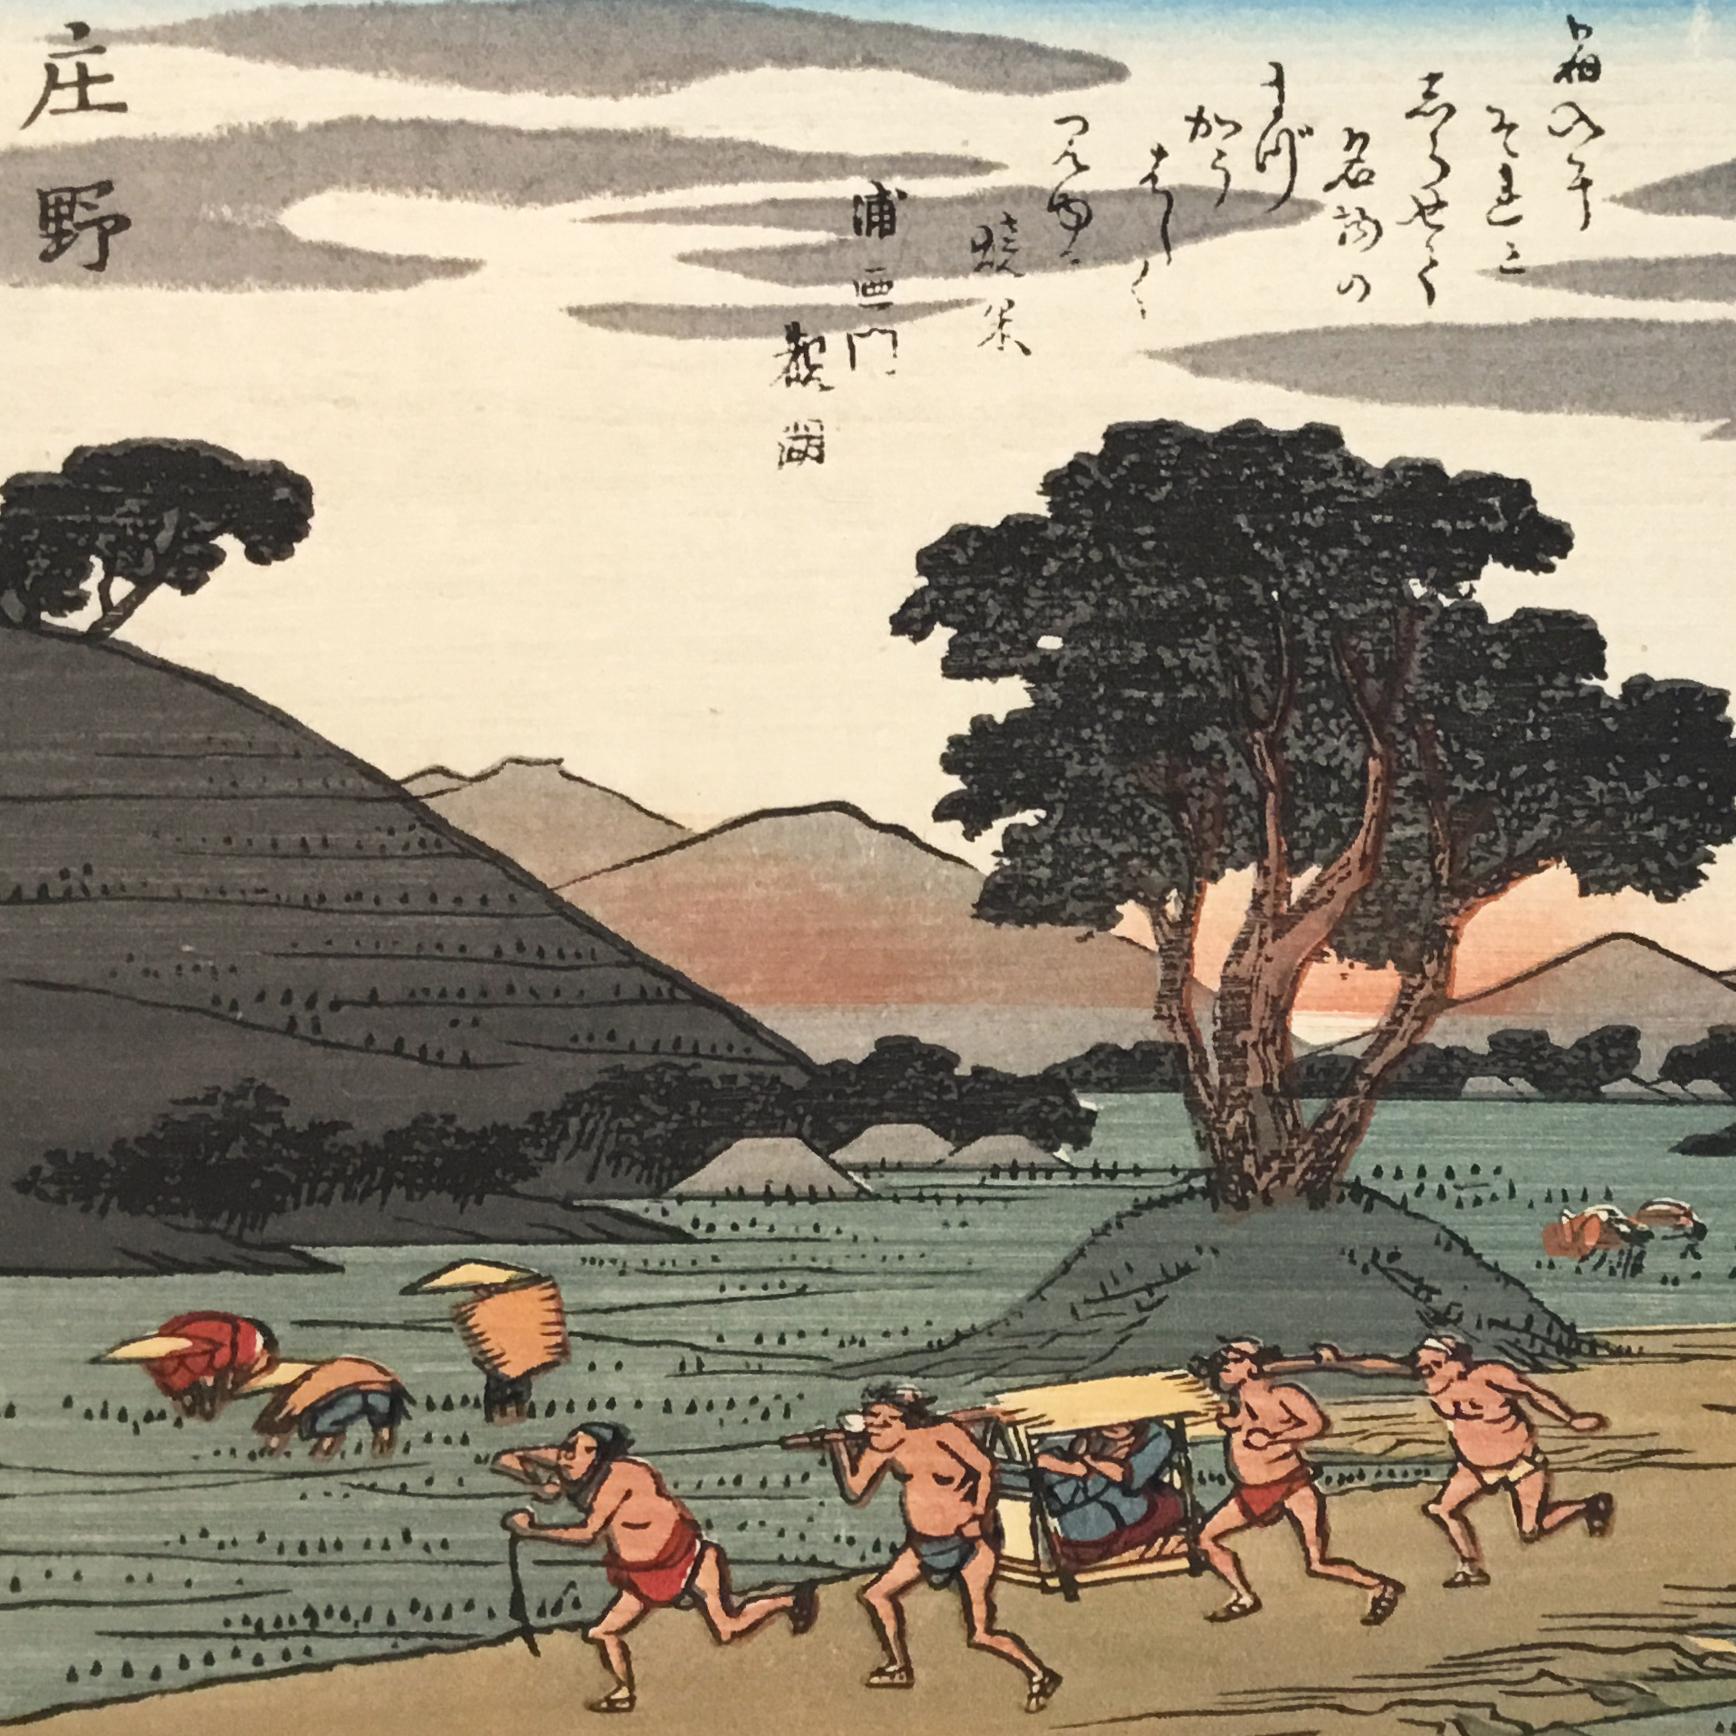 „Ansicht von Shono“, nach Utagawa Hiroshige, Ukiyo-E Holzschnitt, Tokaido, Edo – Print von Utagawa Hiroshige (Ando Hiroshige)